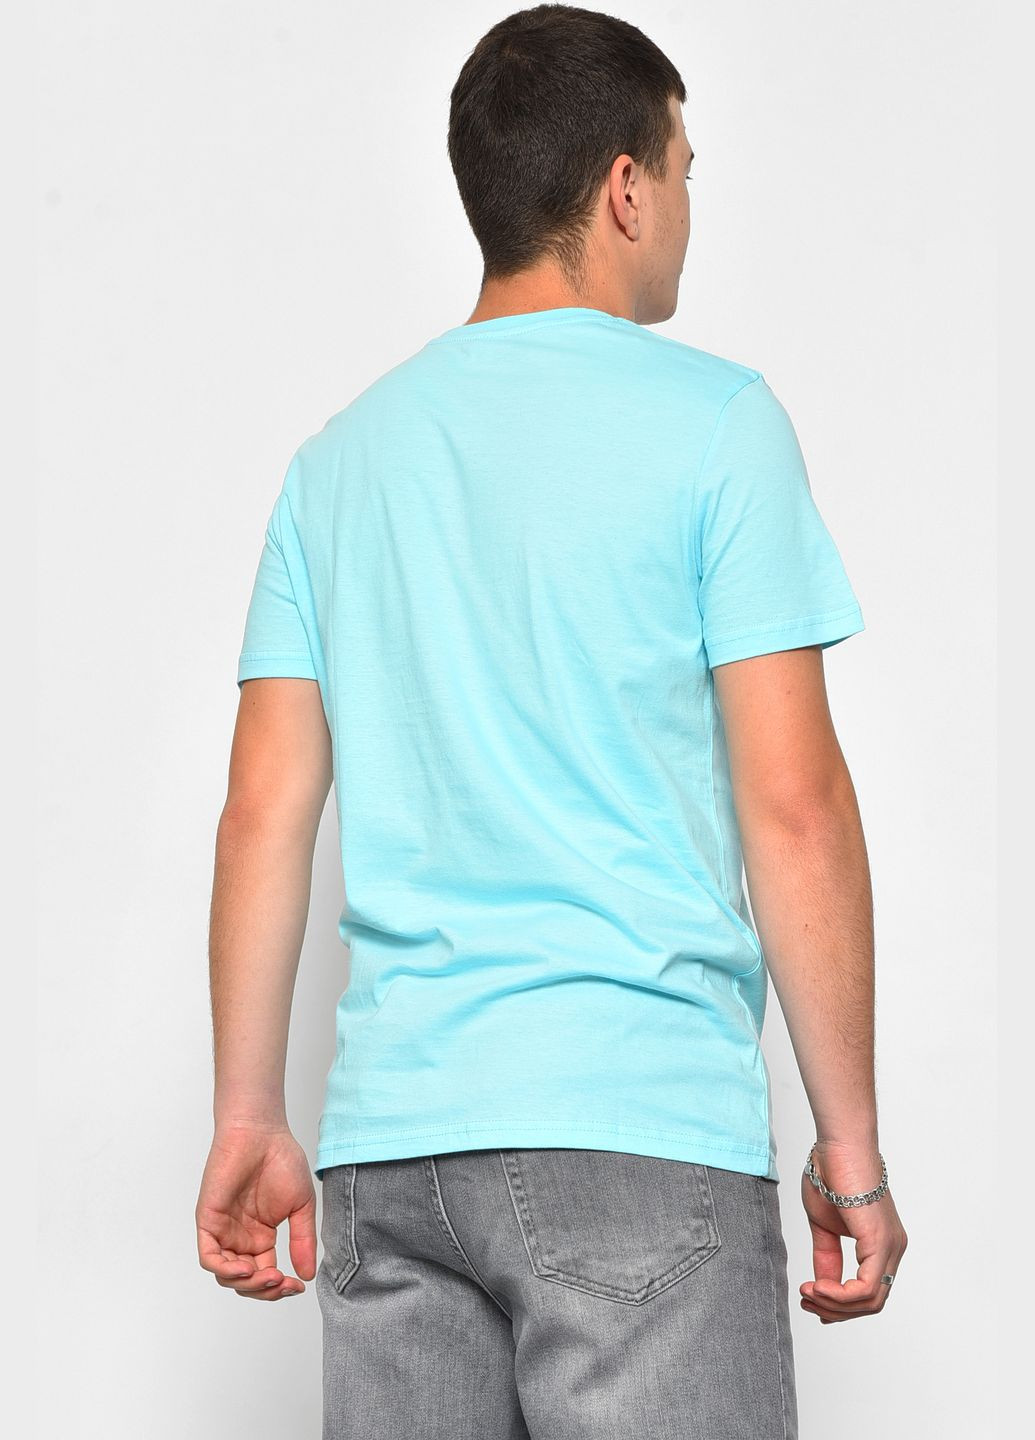 Голубая футболка мужская полубатальная голубого цвета Let's Shop